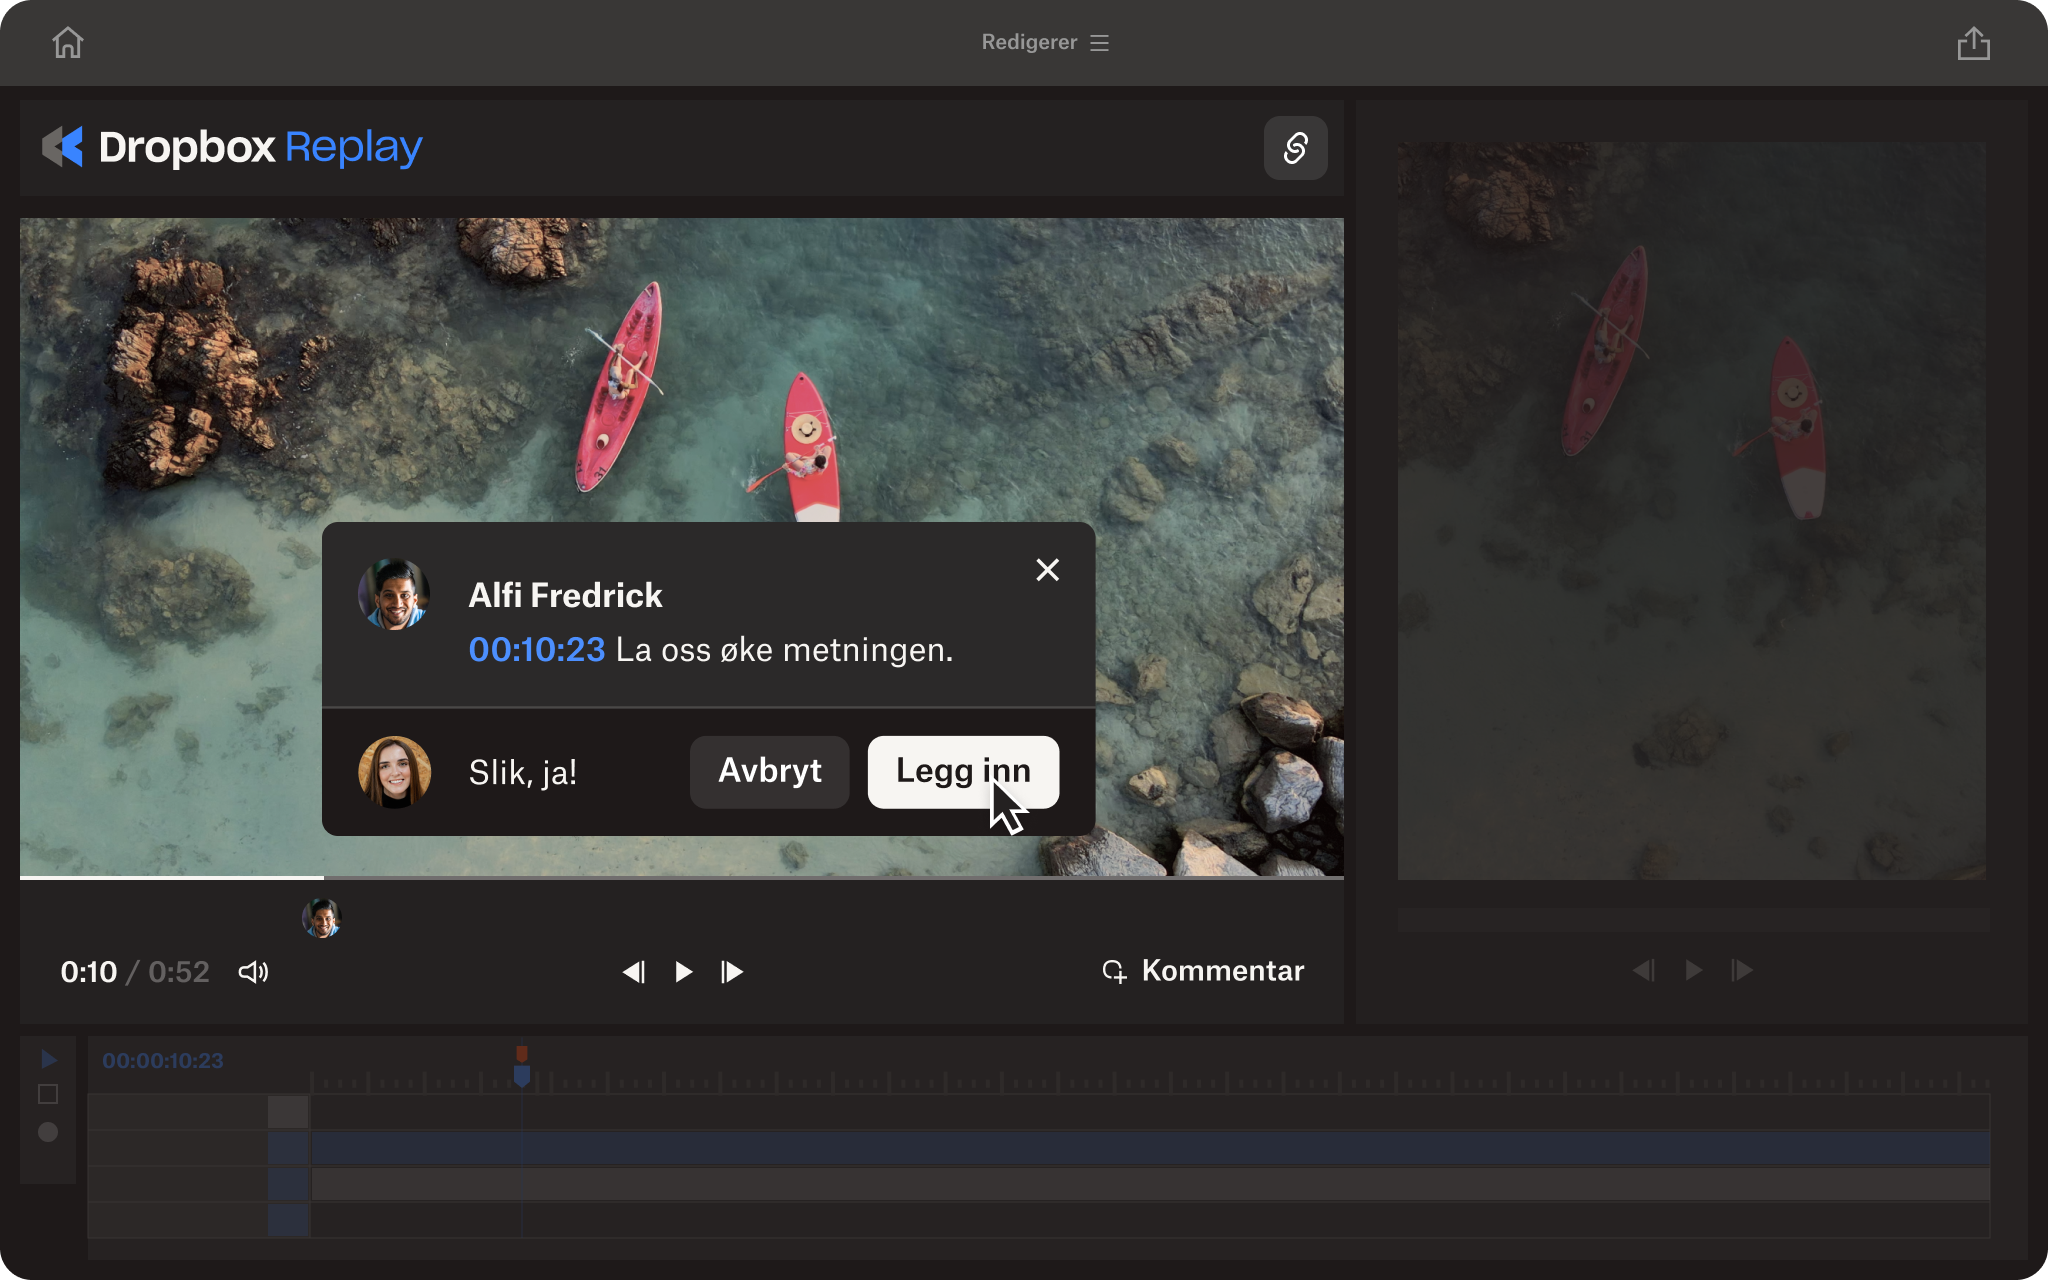 Dropbox Replay-skjermbilde som viser en live-gjennomgang